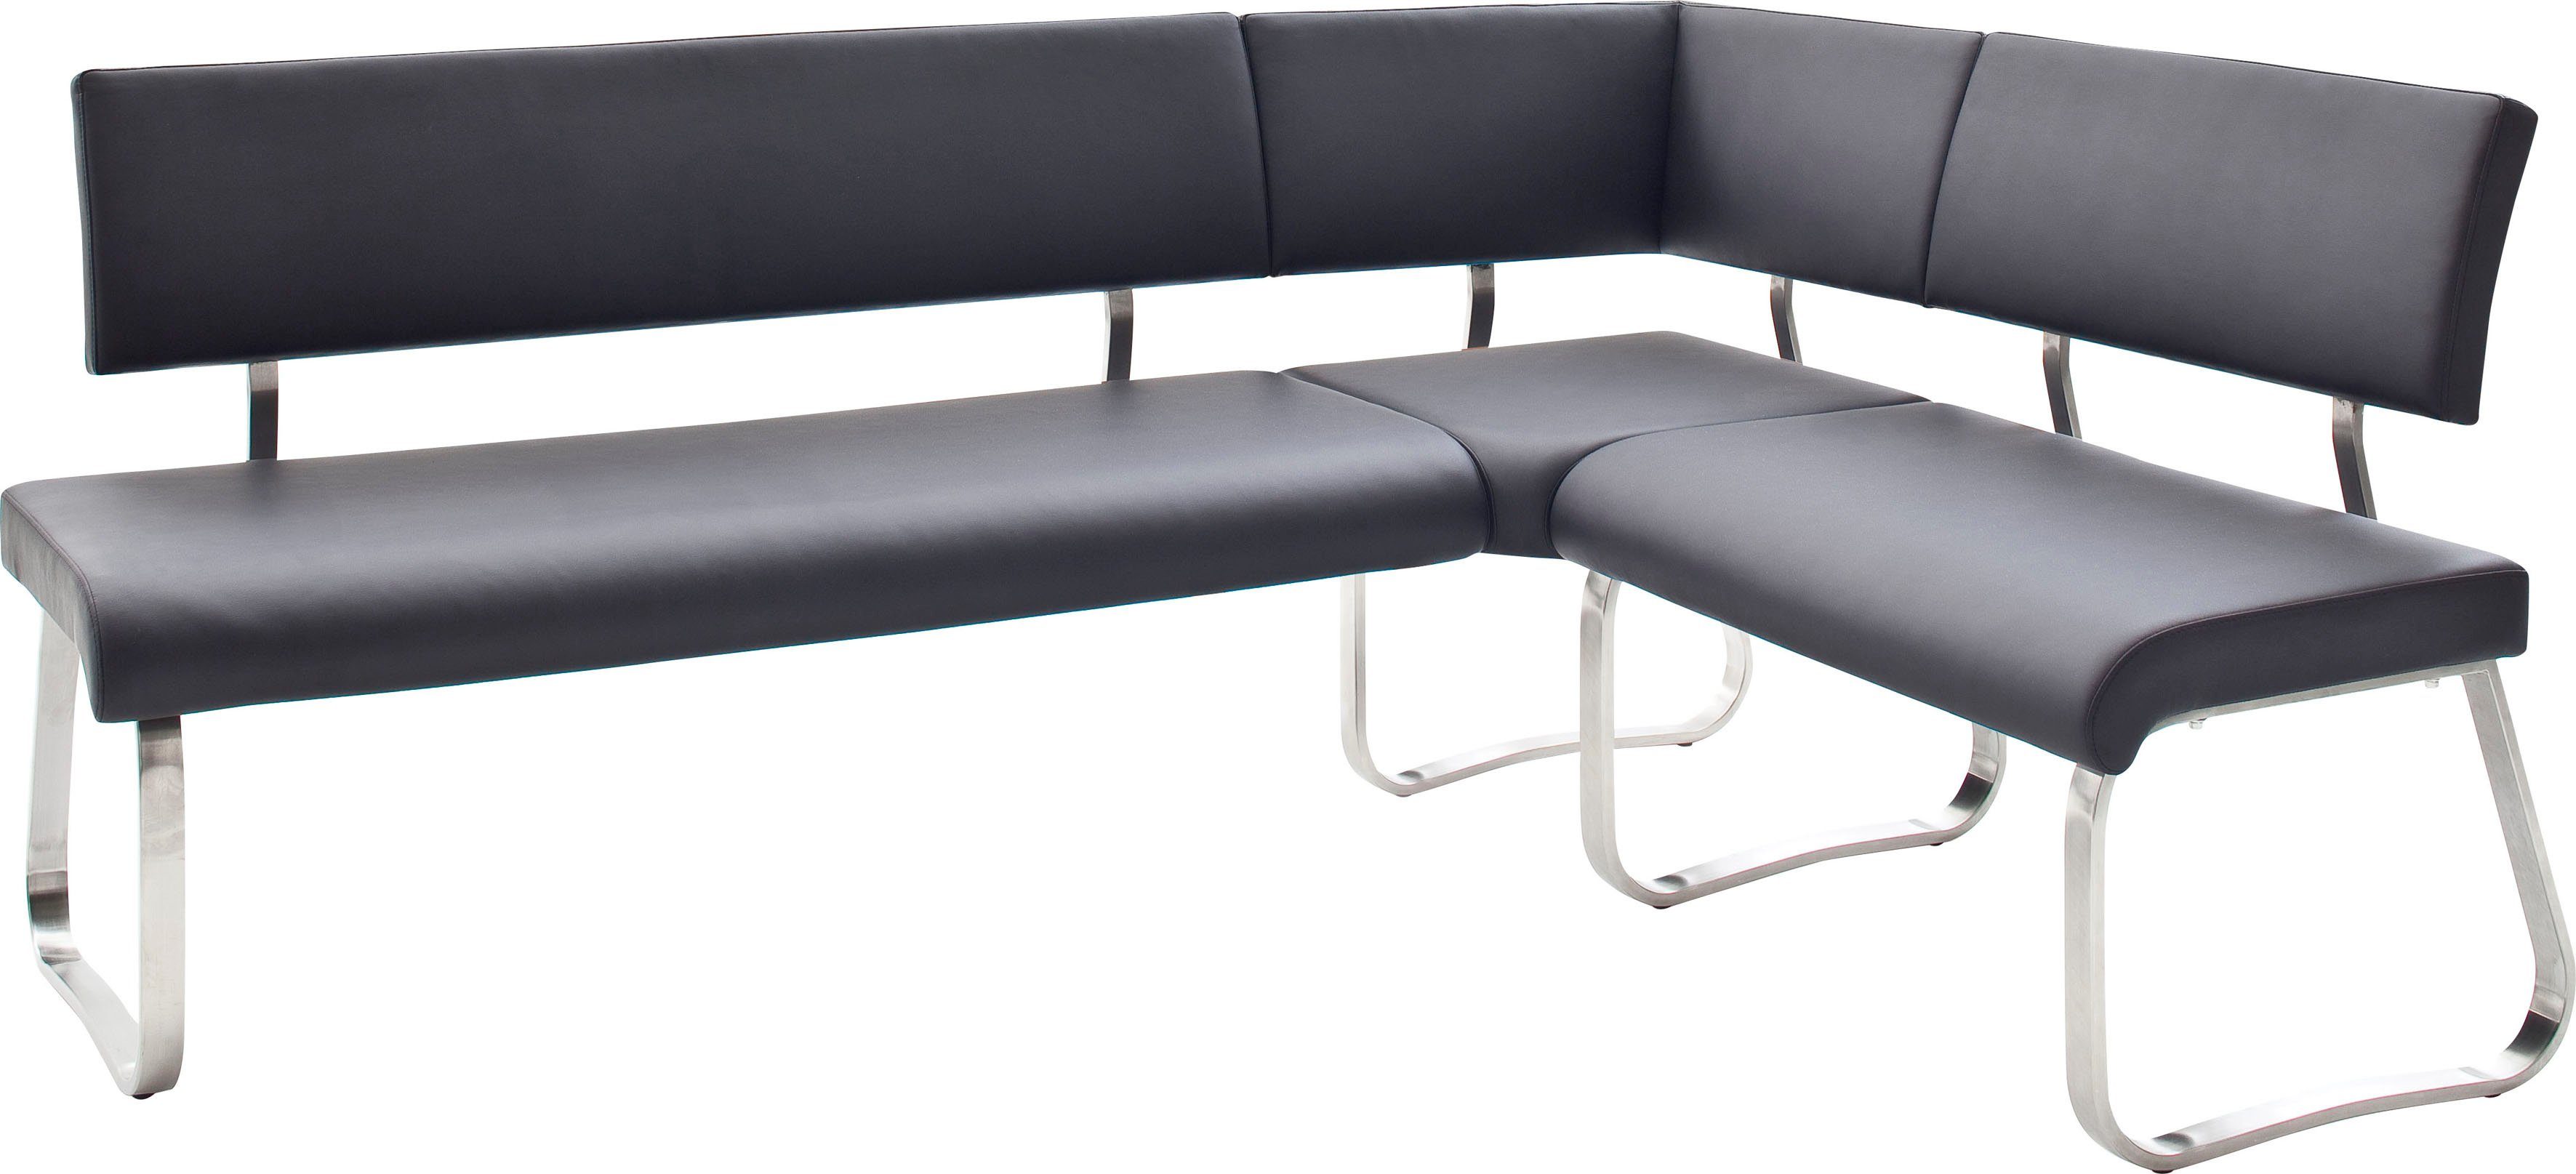 belastbar kg furniture cm, Arco, Raum frei Breite im 200 500 Eckbank bis Eckbank stellbar, MCA Schwarz